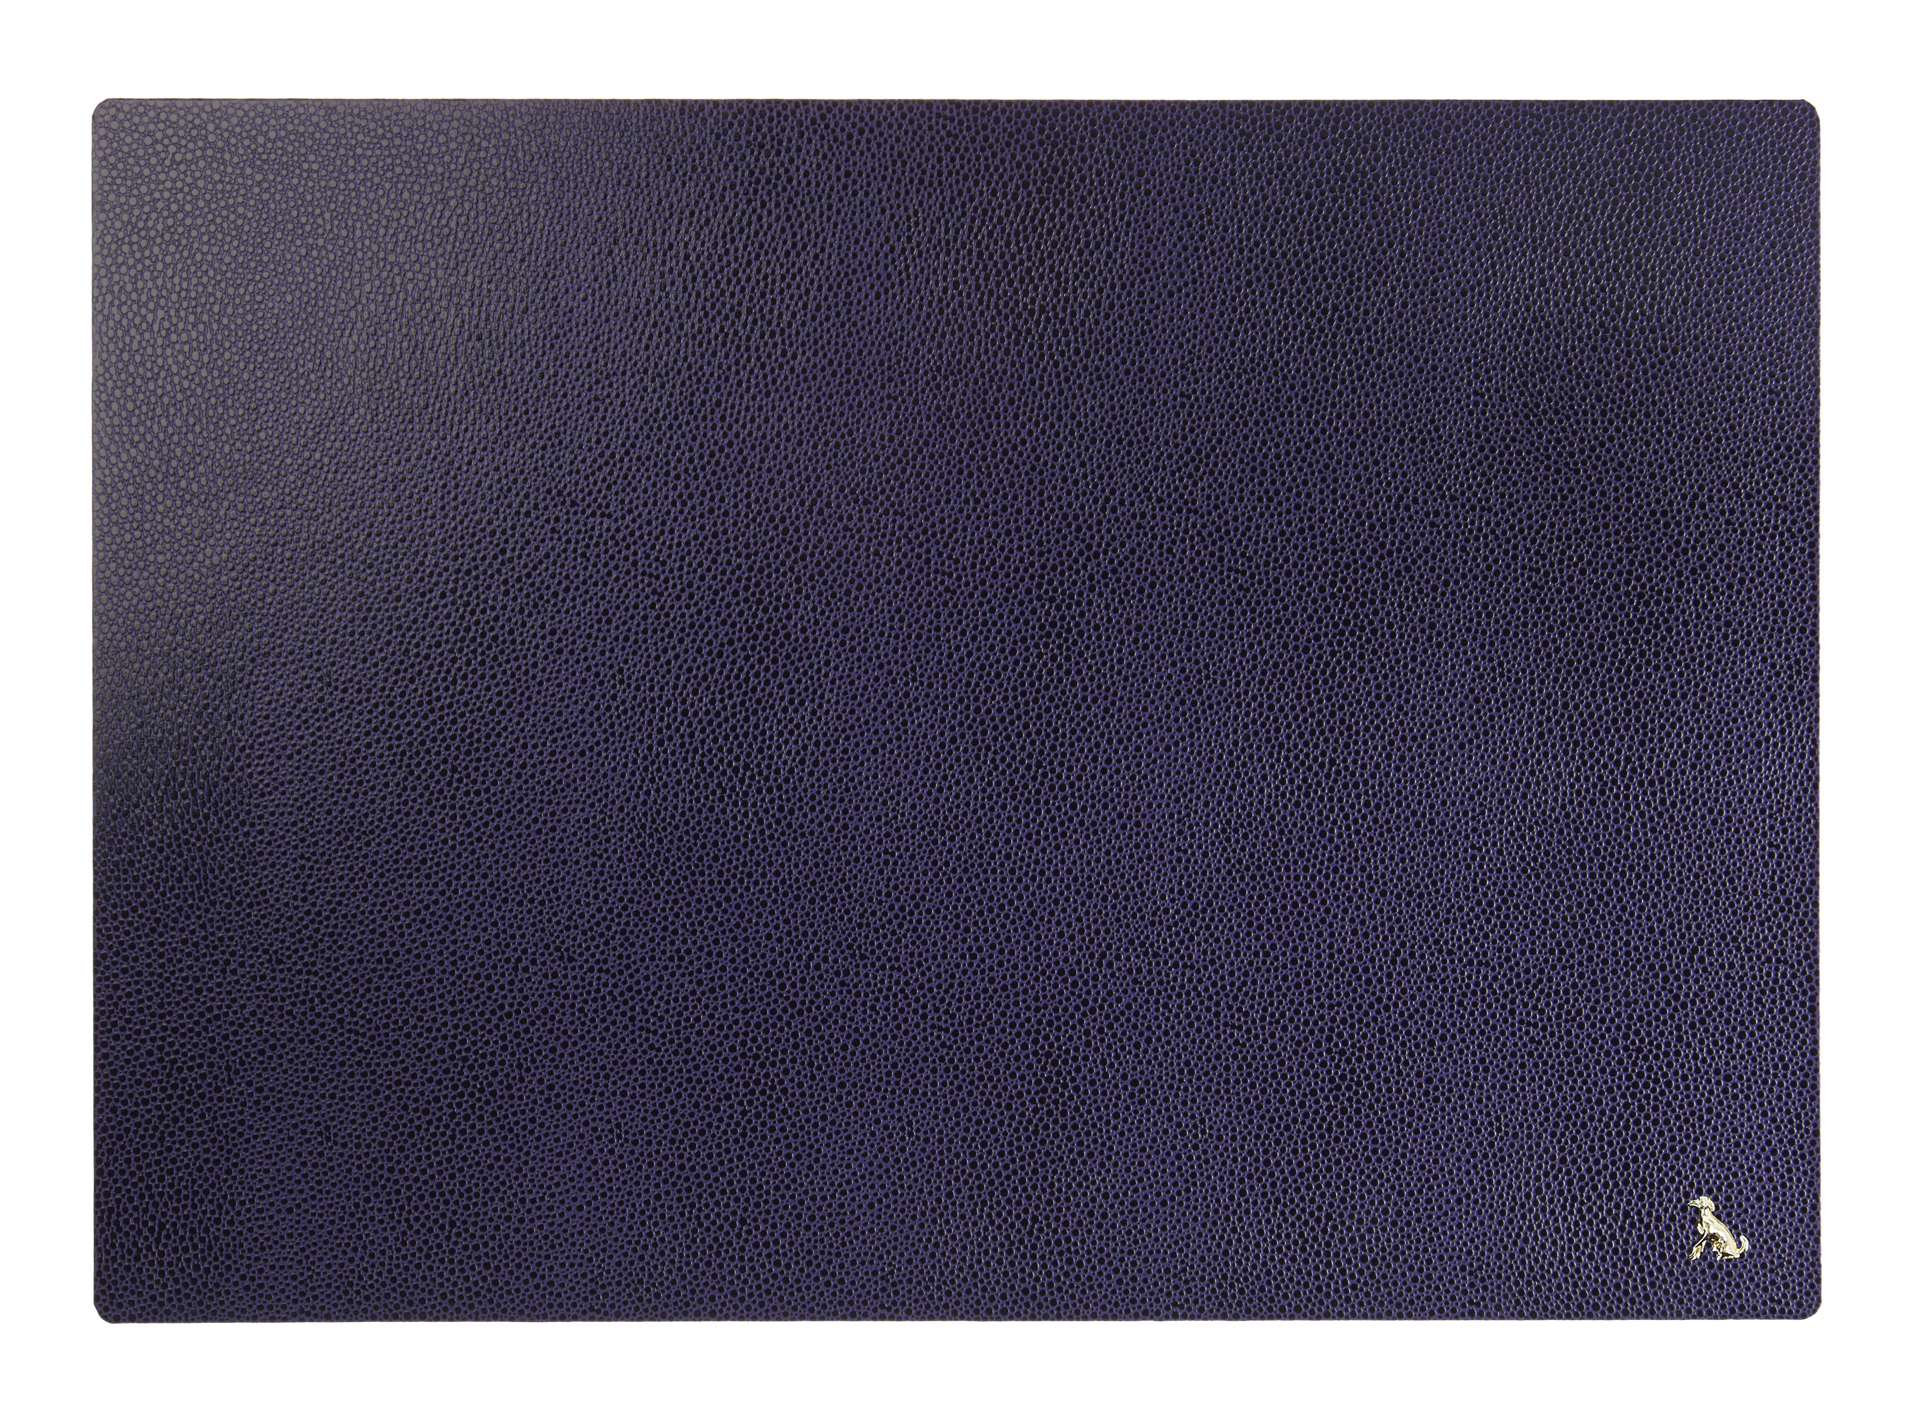 Keats Mouse Mat in purple